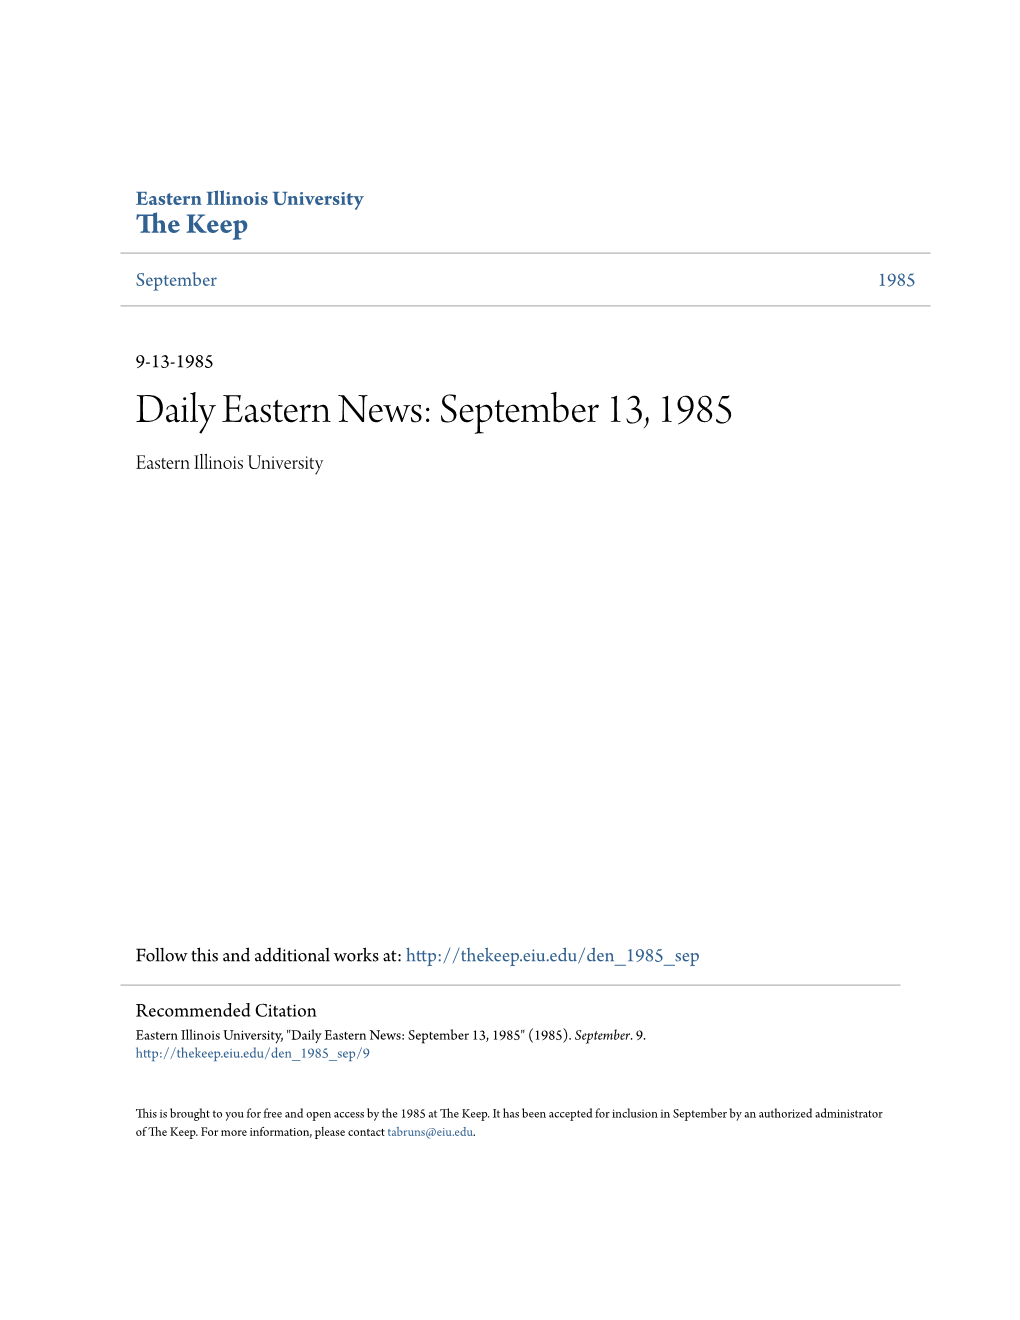 Daily Eastern News: September 13, 1985 Eastern Illinois University